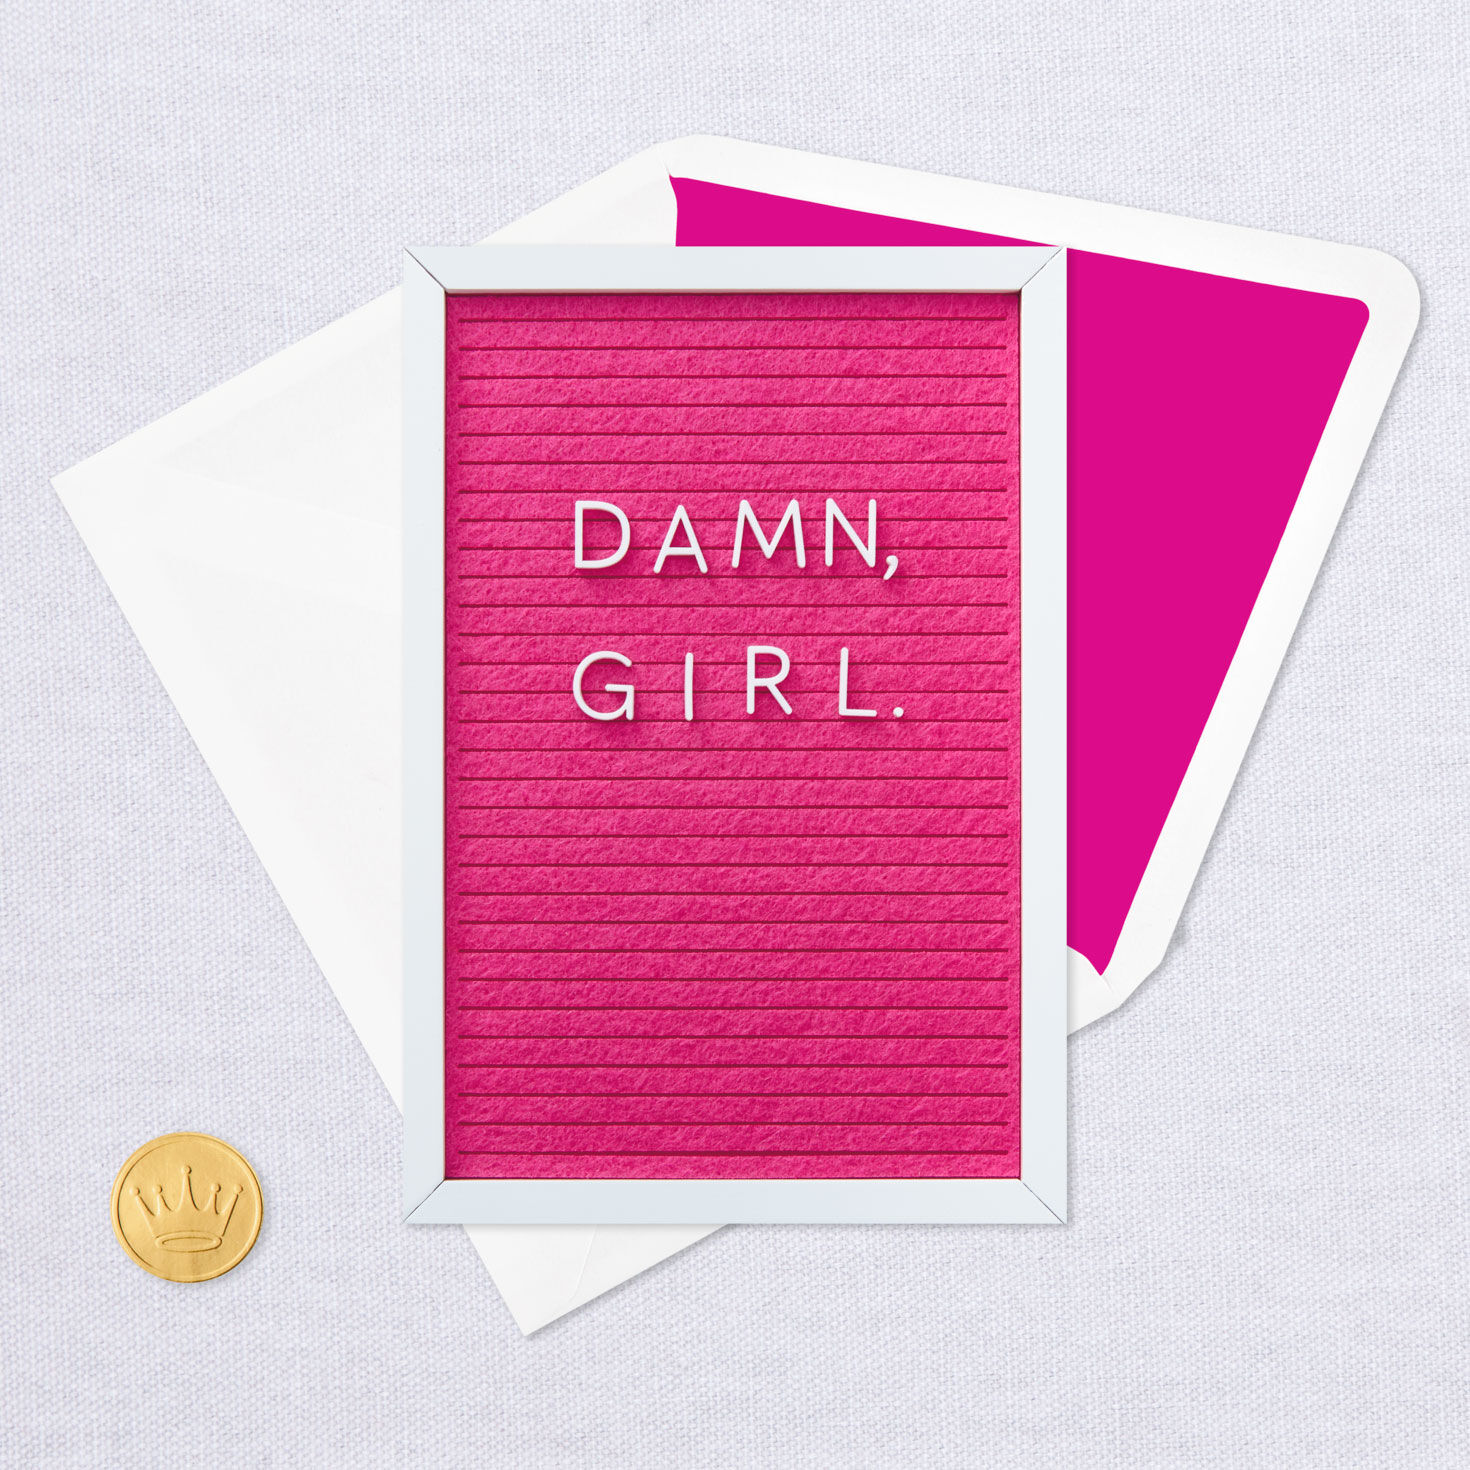 Damn, Girl Felt Letter Board Birthday Card for Her for only USD 8.99 | Hallmark